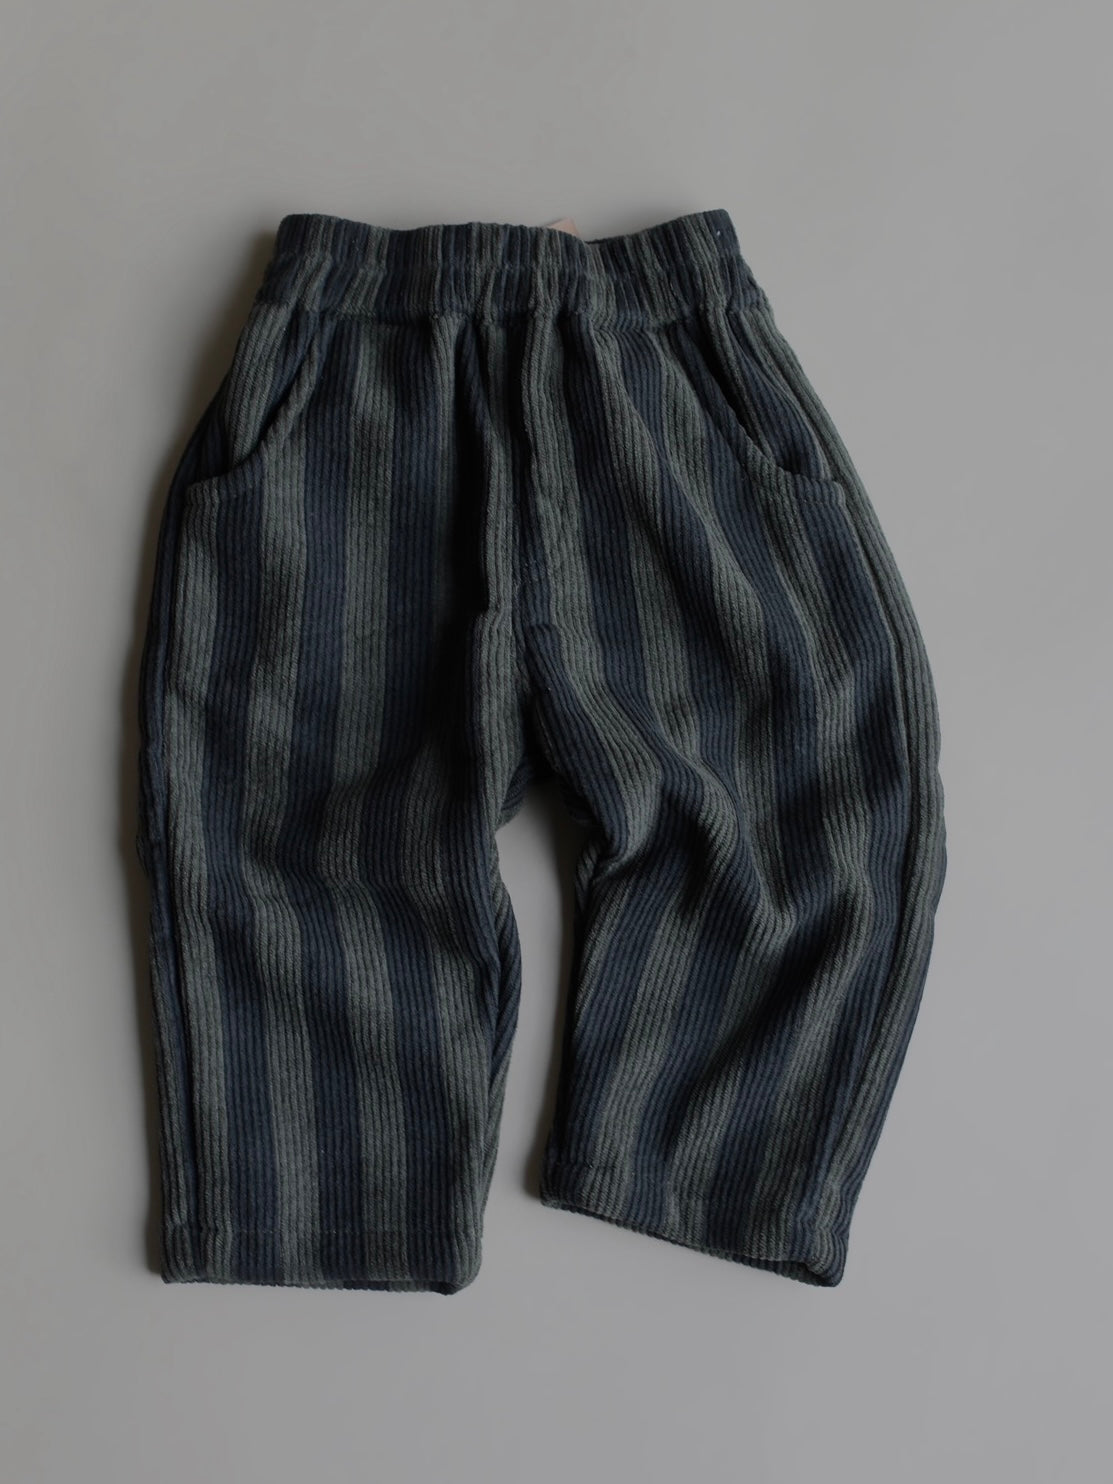 Striped Corduroy Pants / Green